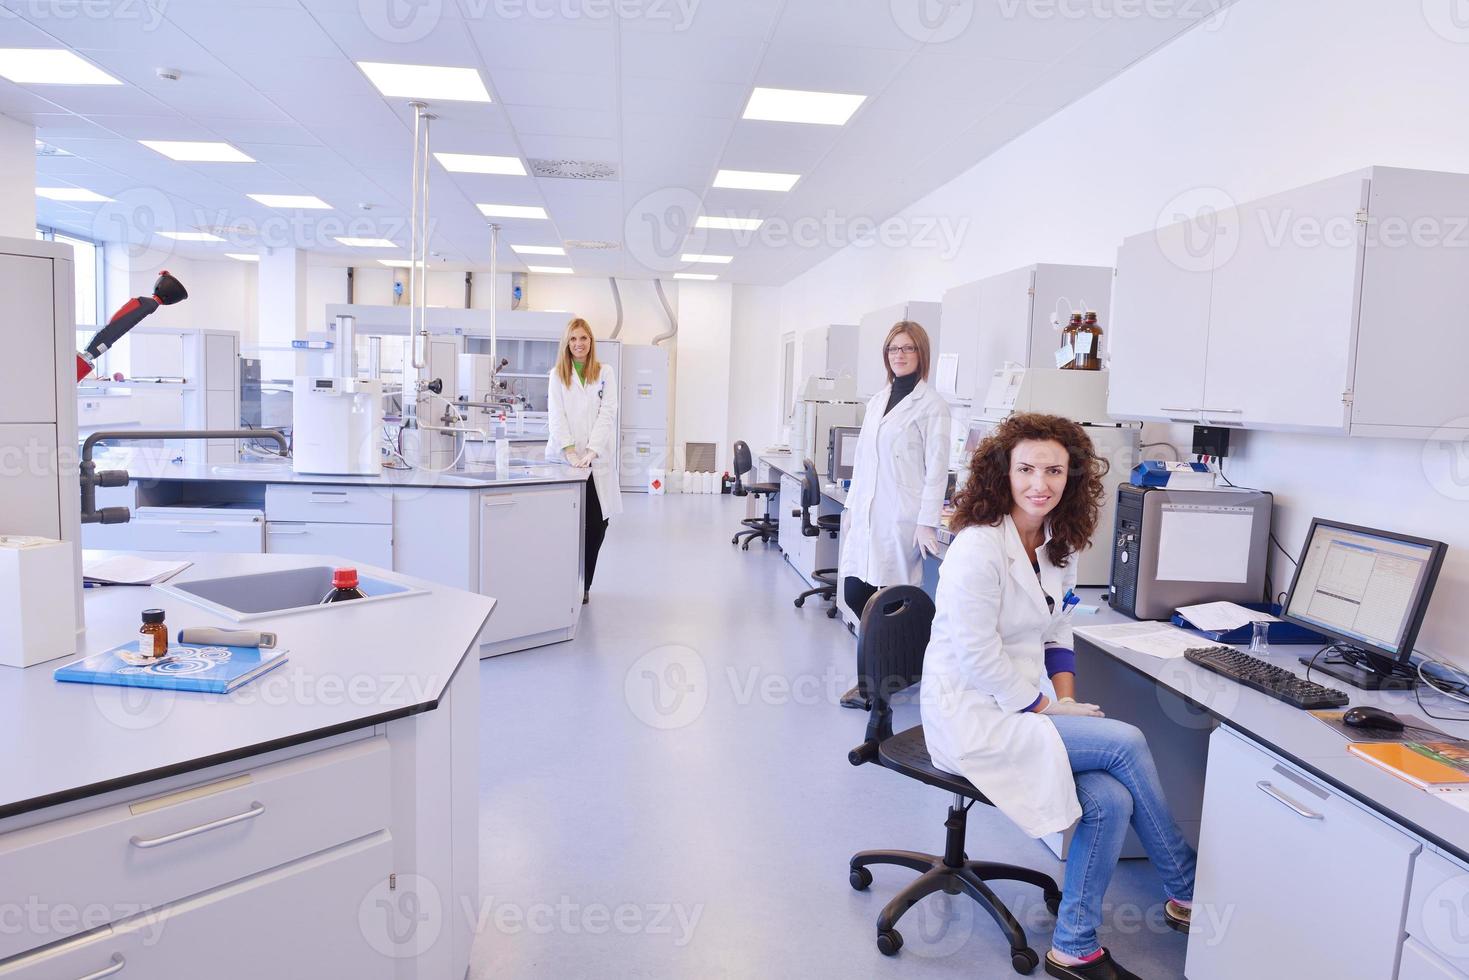 wetenschappers die werken in het laboratorium foto